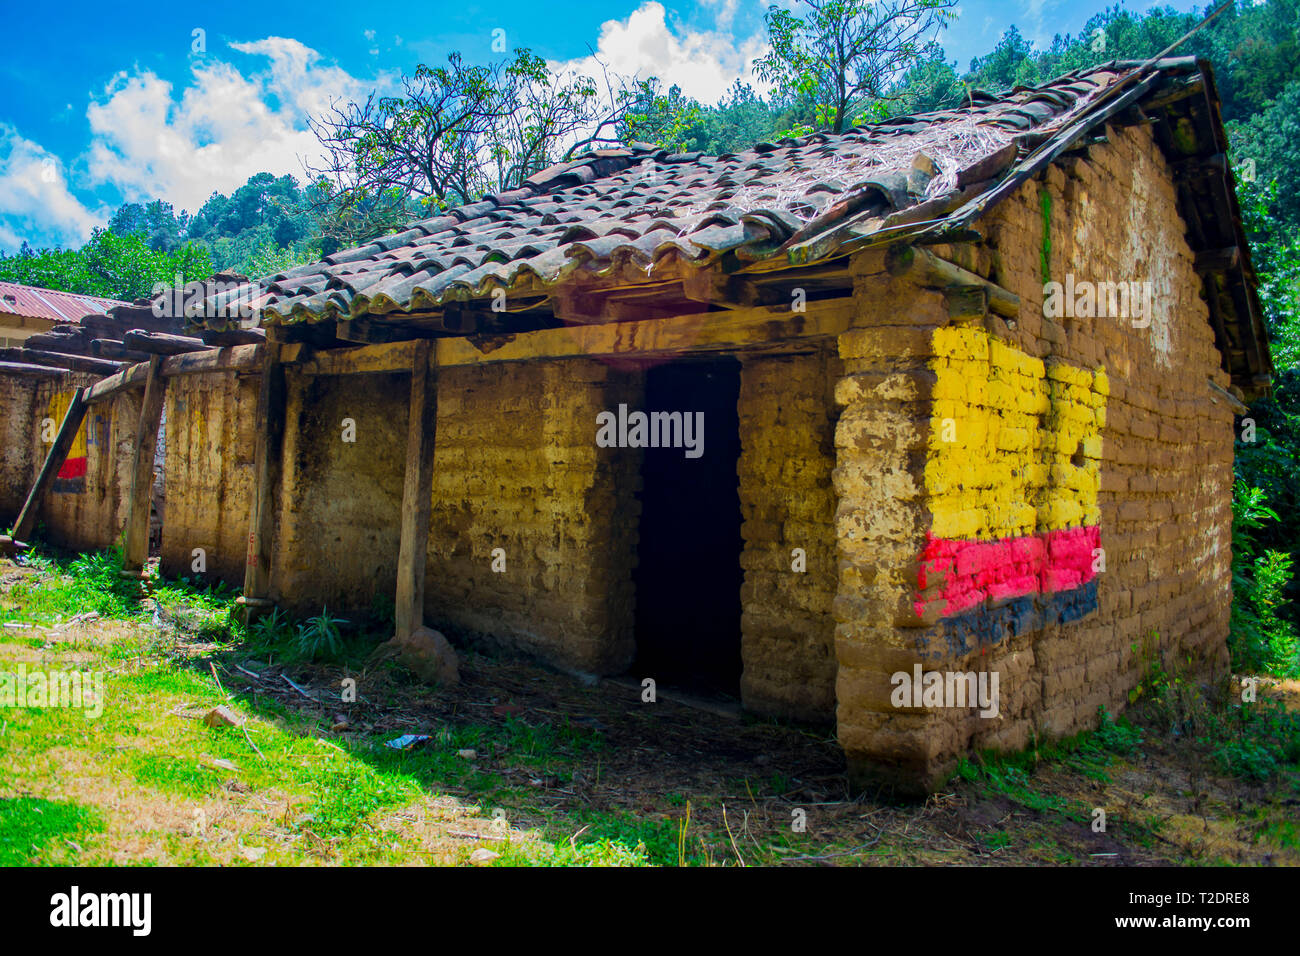 Casa Antigua abandonada en el paraíso echo de adobe tierra barro rasilla y casa de los abuelo mayas en la guerra y conflicto armado de Guatemala Foto Stock